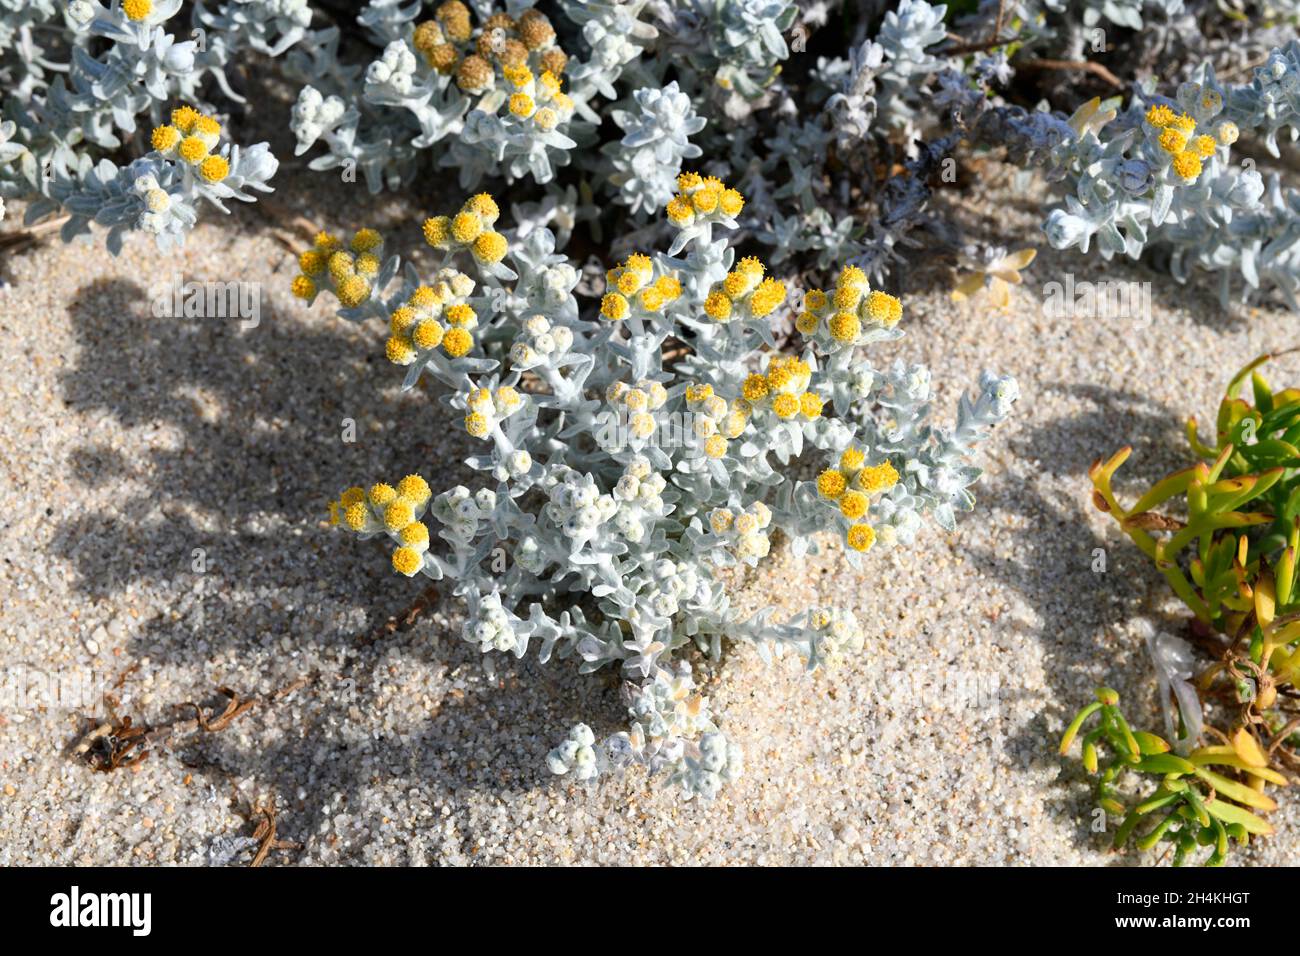 La planta de algodón (Otanthus maritimus) es una hierba perenne nativa de parte de las costas mediterráneas y de las costas atlánticas de Portugal; España, francia y. Foto de stock